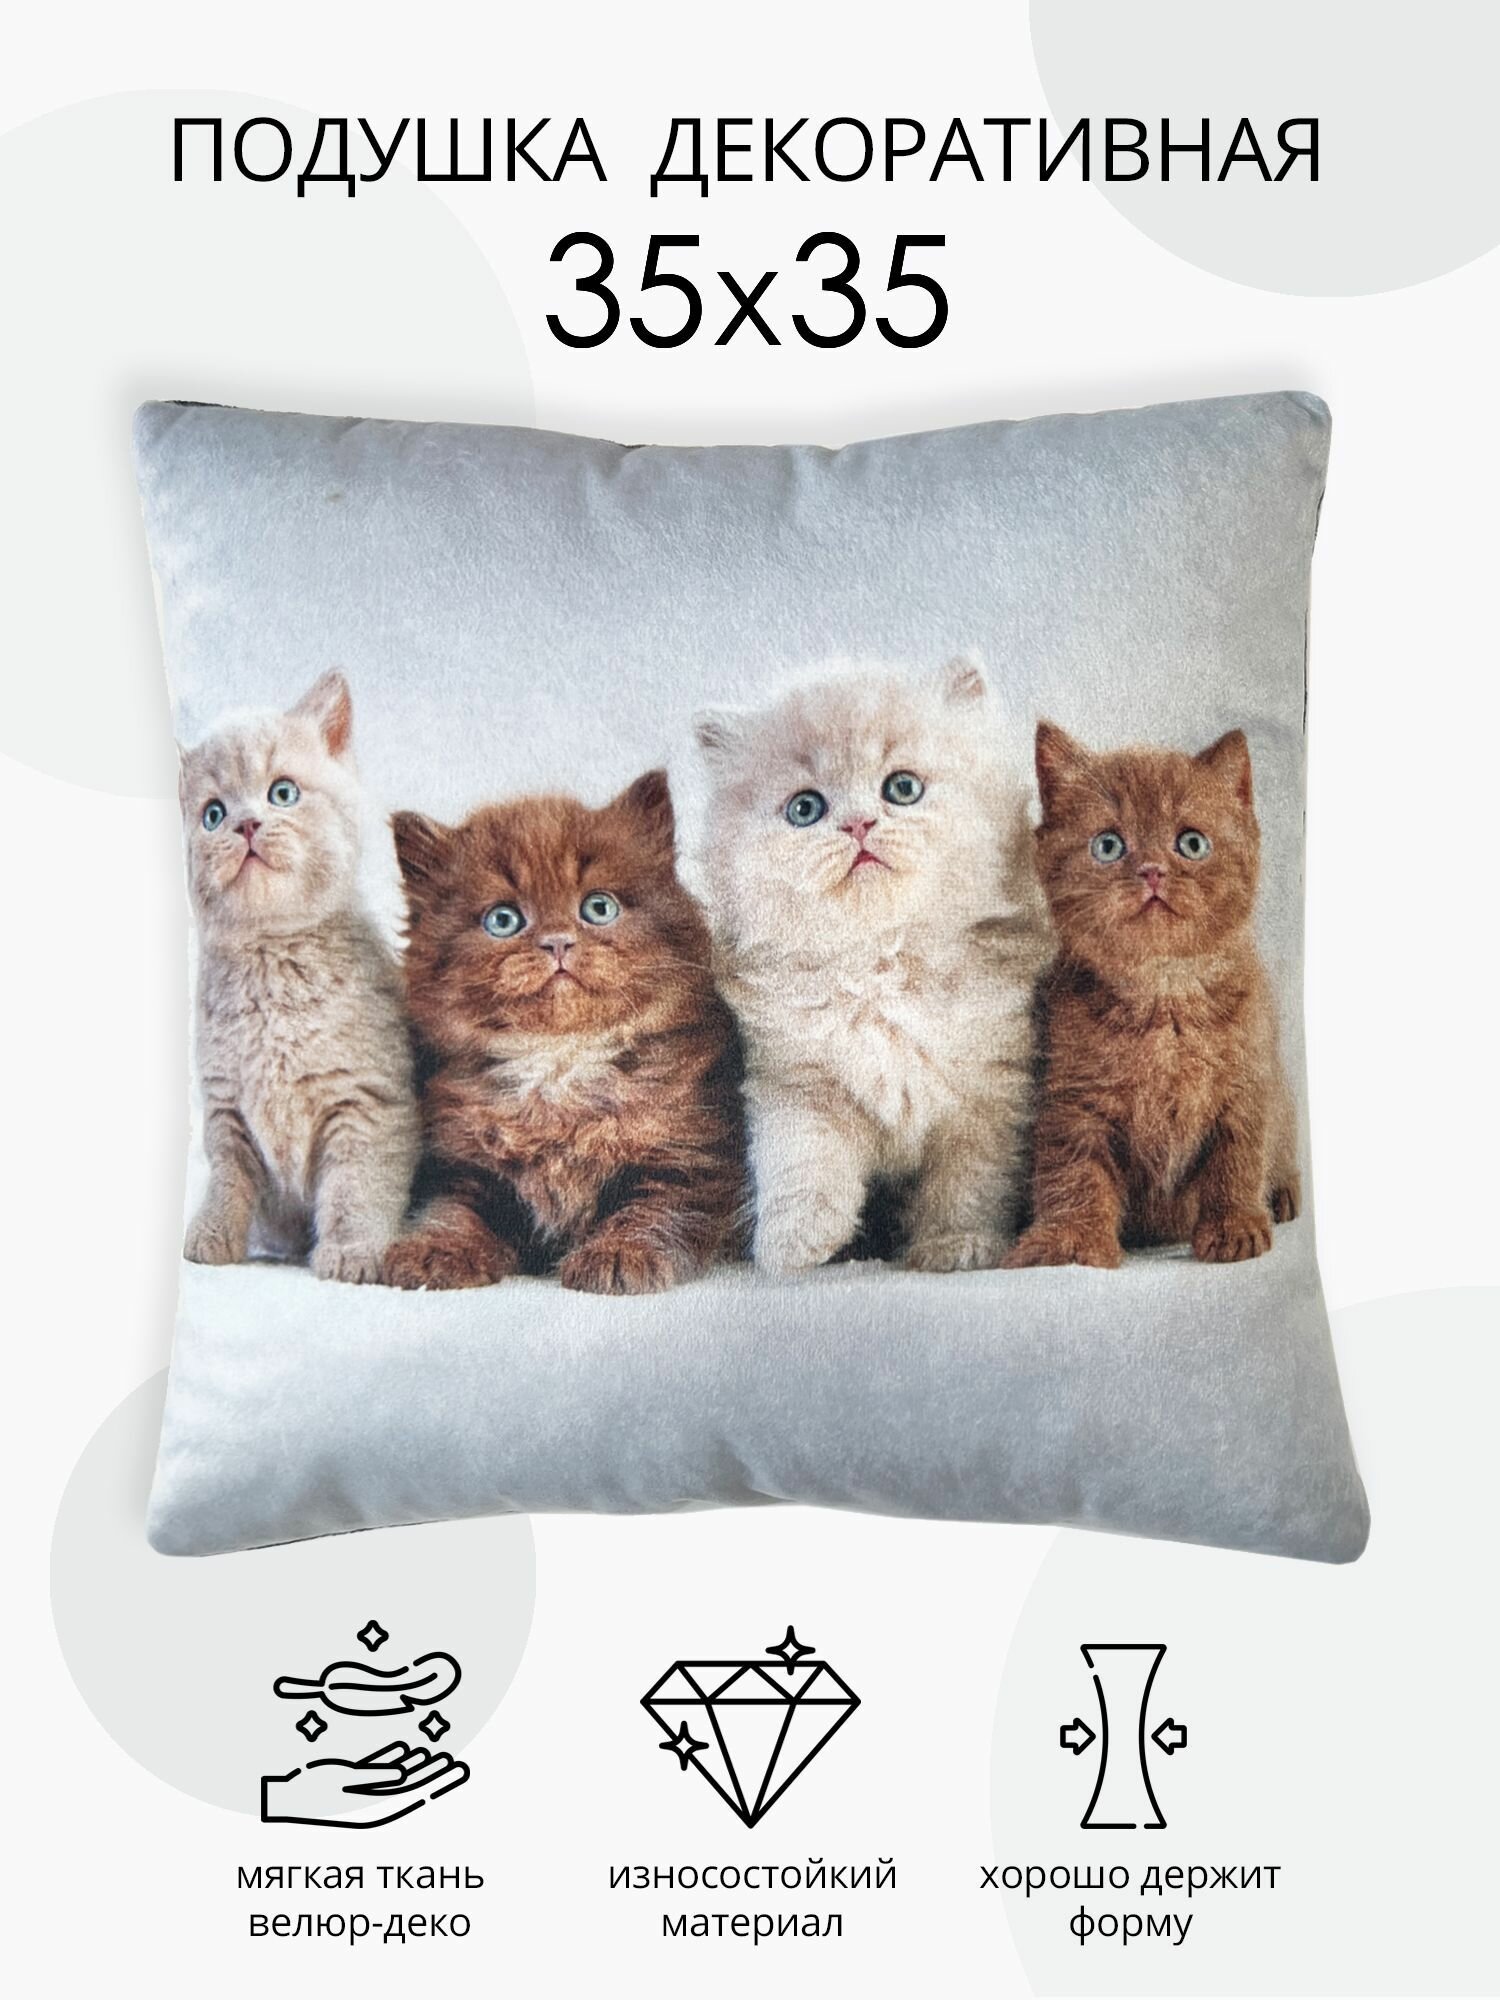 Подушка декоративная Пушиста компания подушка из велюра для дивана и кресла подушка в подарок рисунок котята размер 35х35 см.